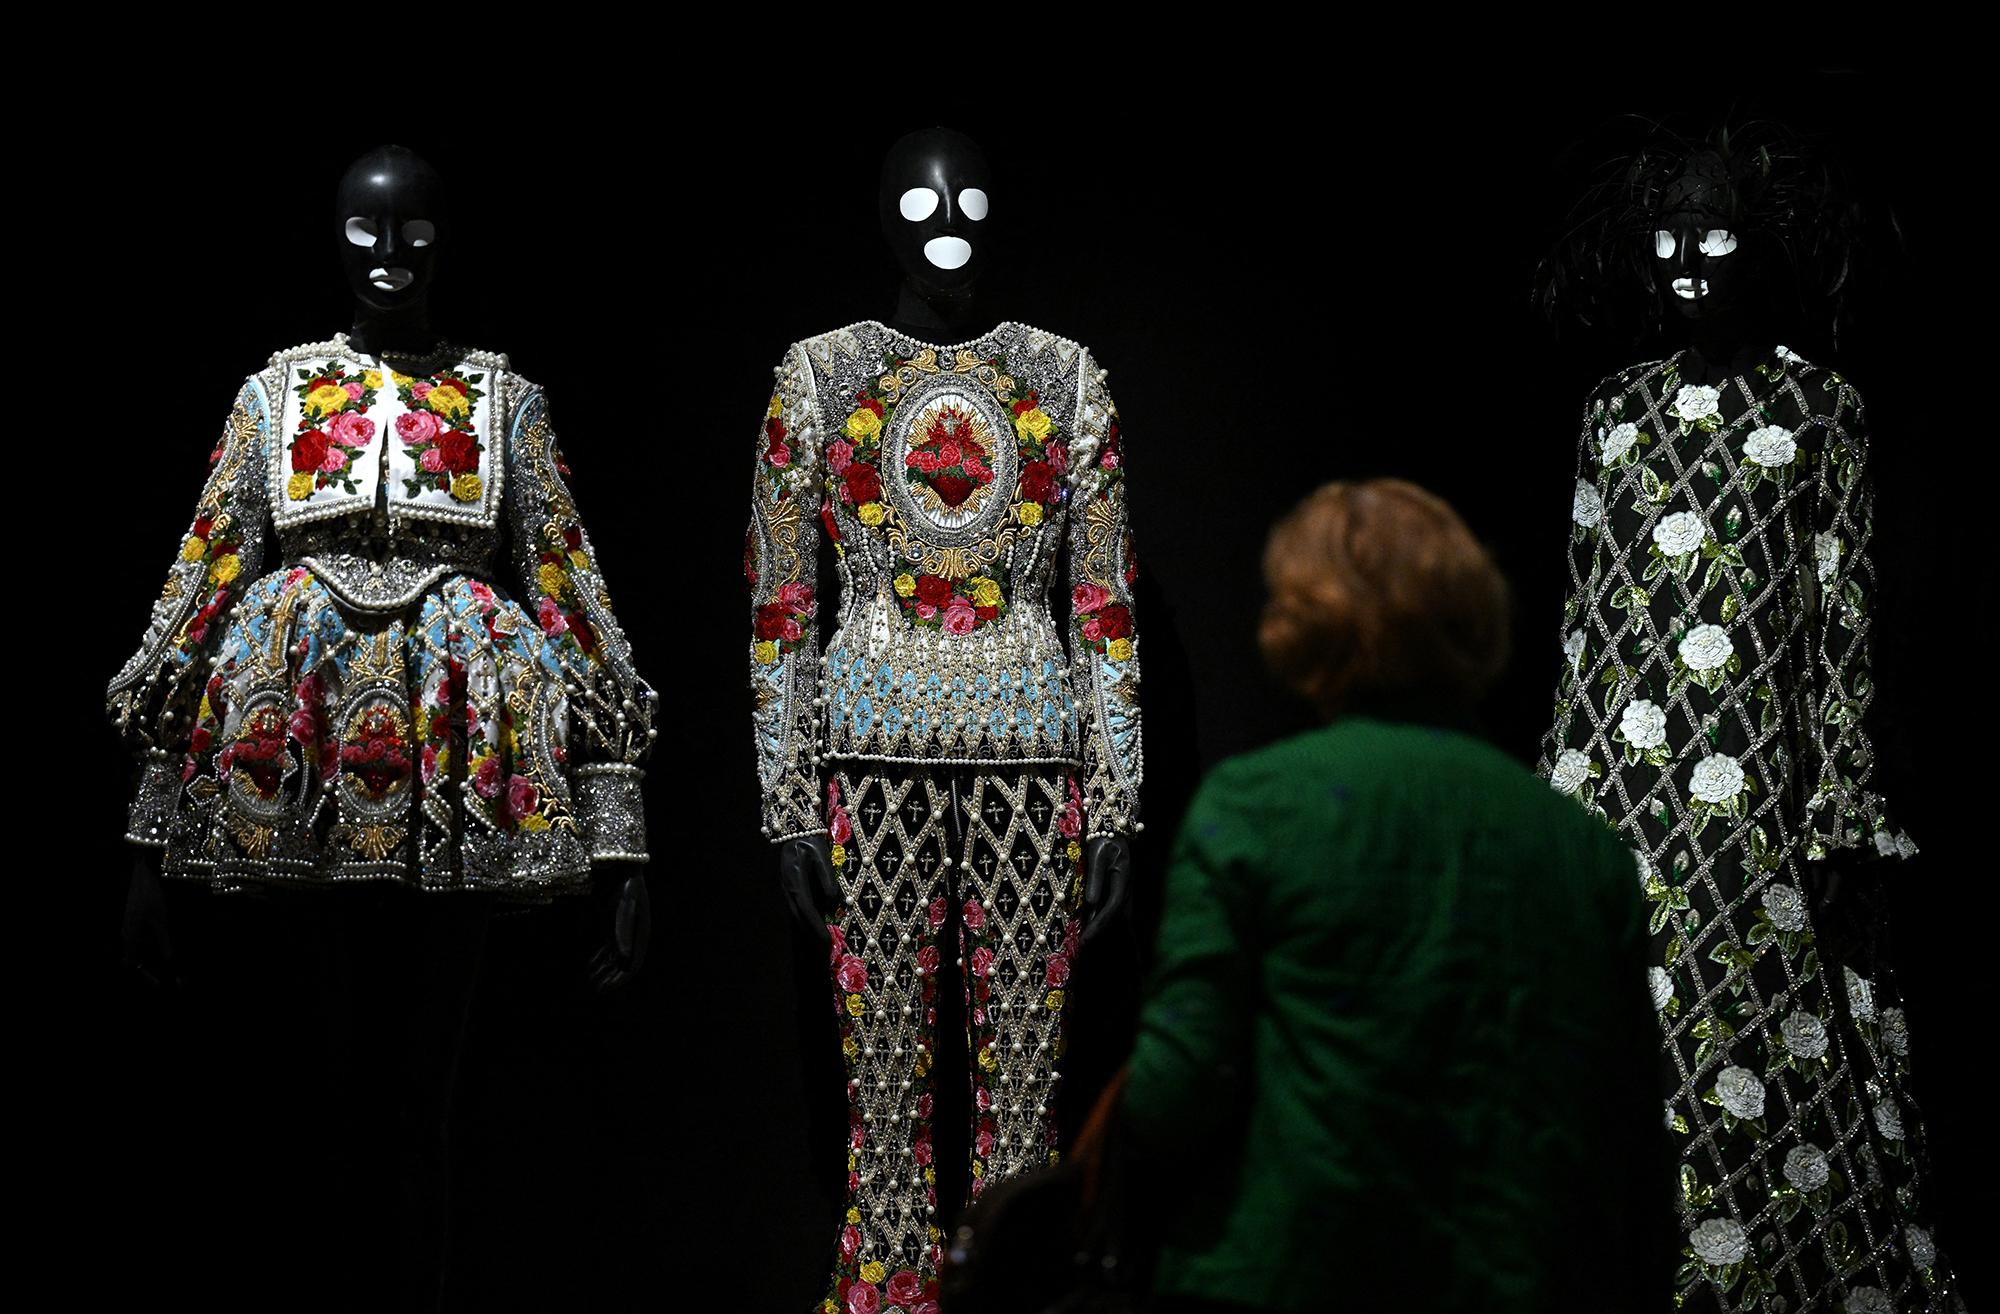 Des créations inspirées par Frida Kahlo à voir lors de l'exposition "Frida Kahlo, au-delà des apparences" à Paris. [AFP - Emmanuel DUNAND]